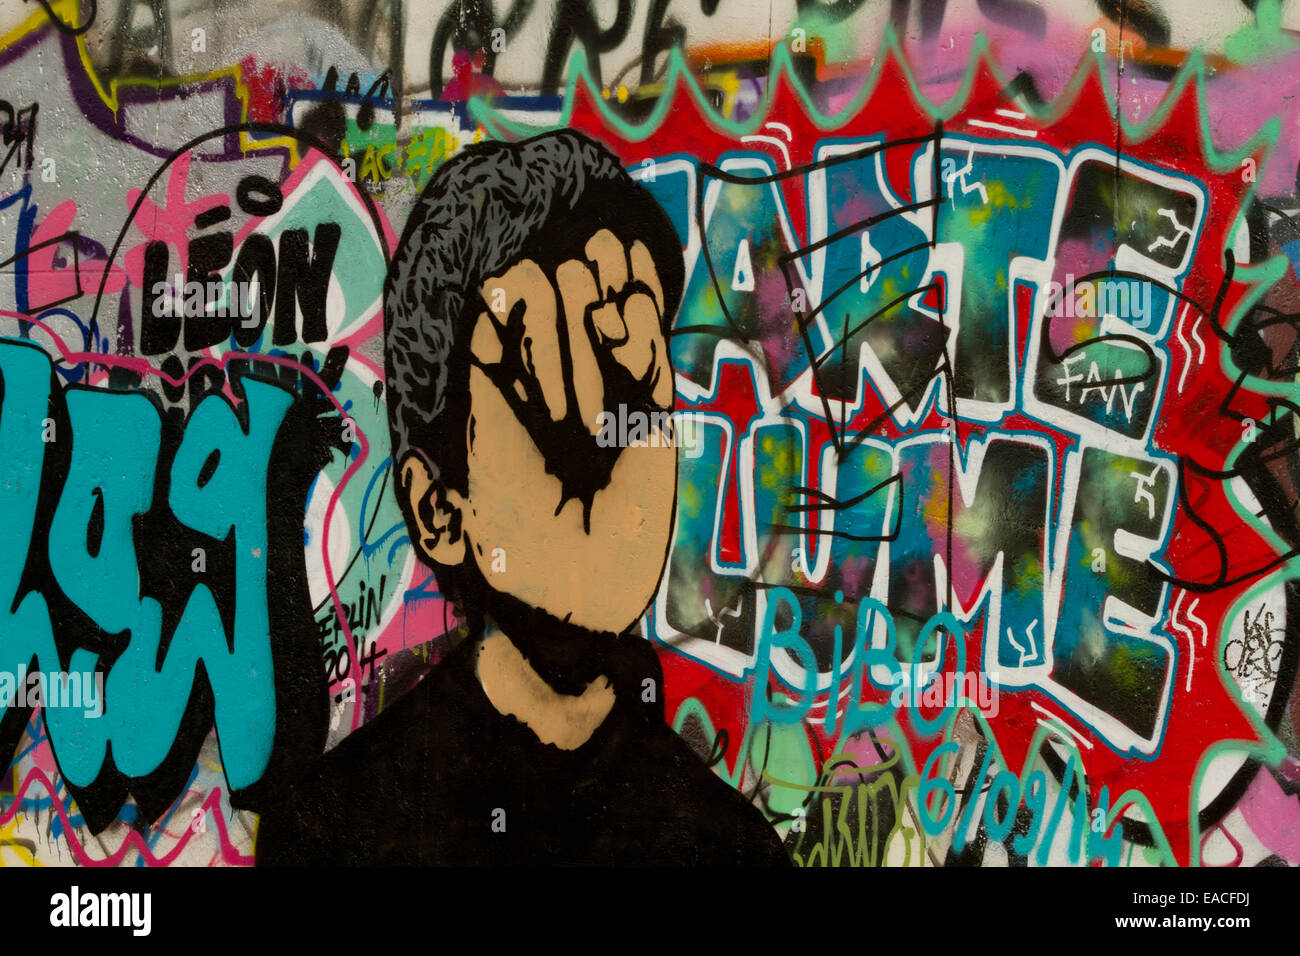 Graffiti street art Berlin wall face cartoon letters Stock Photo